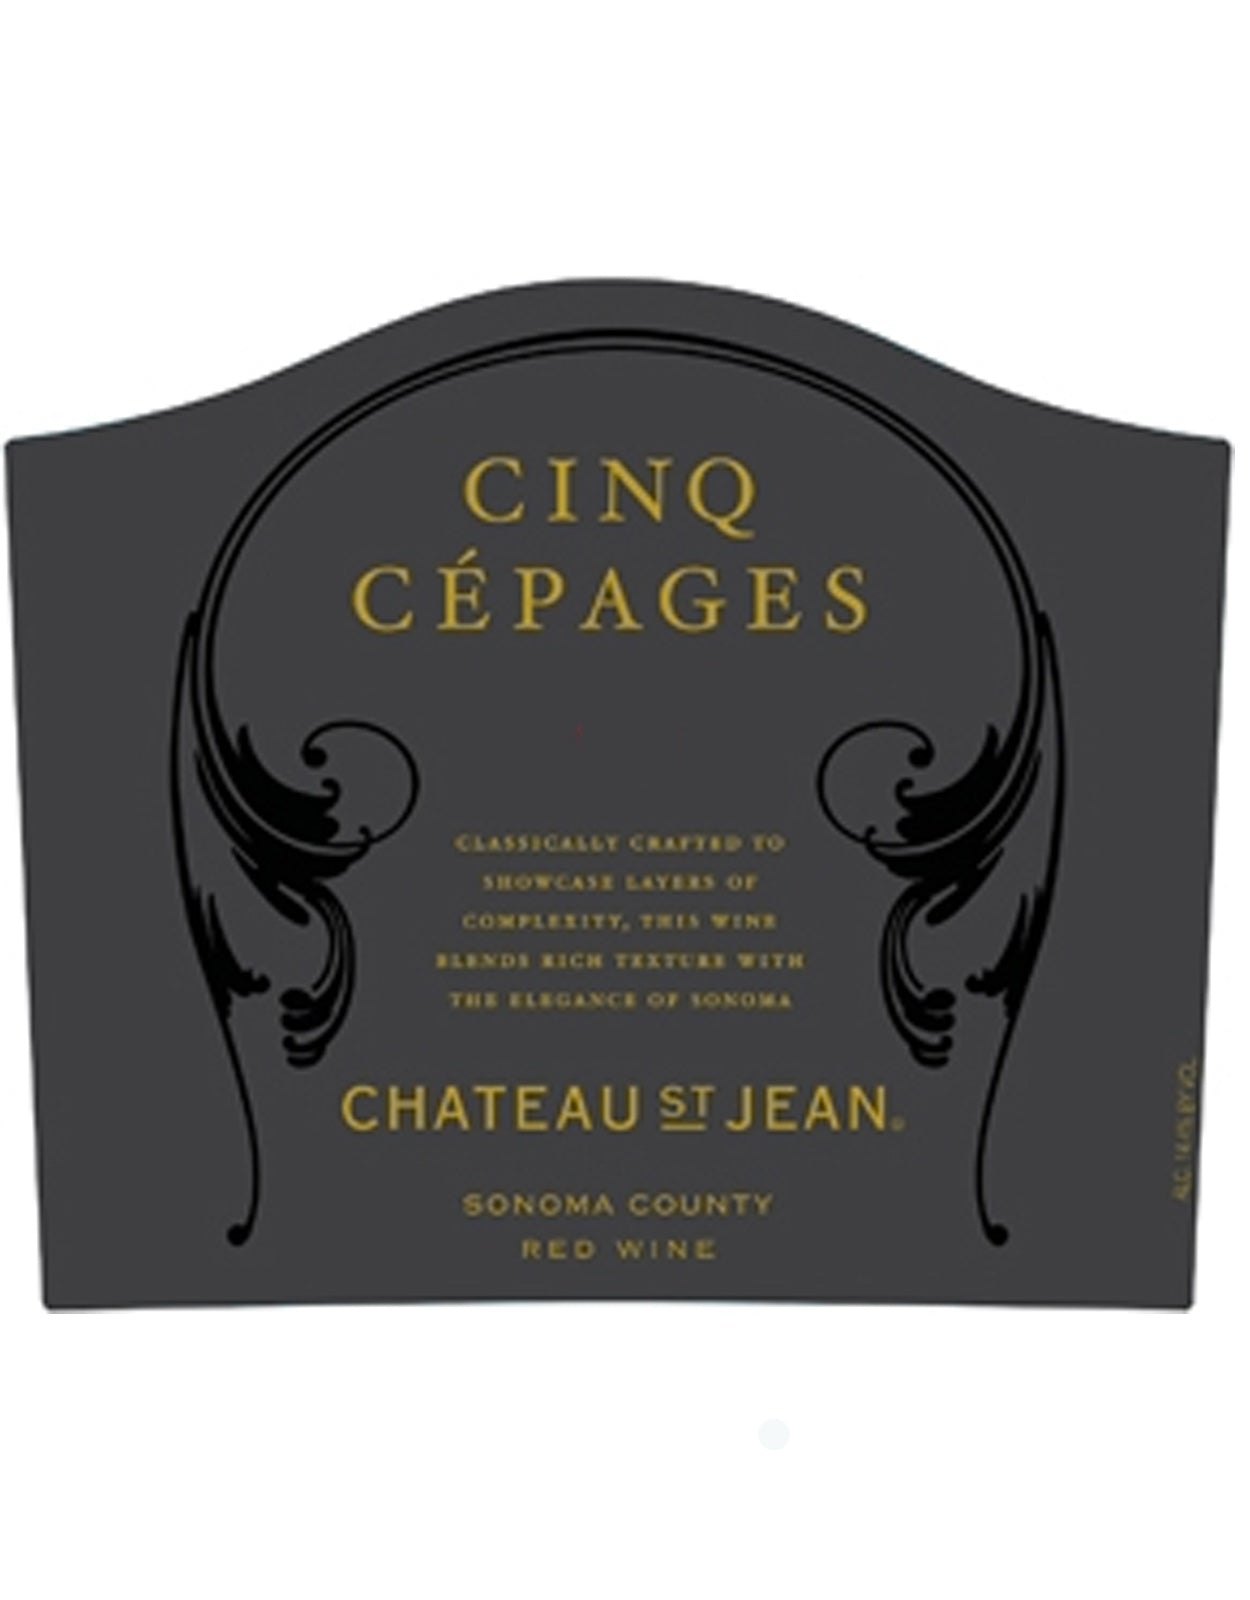 Chateau St Jean Cinq Cepages 2015 - 1.5 Litre